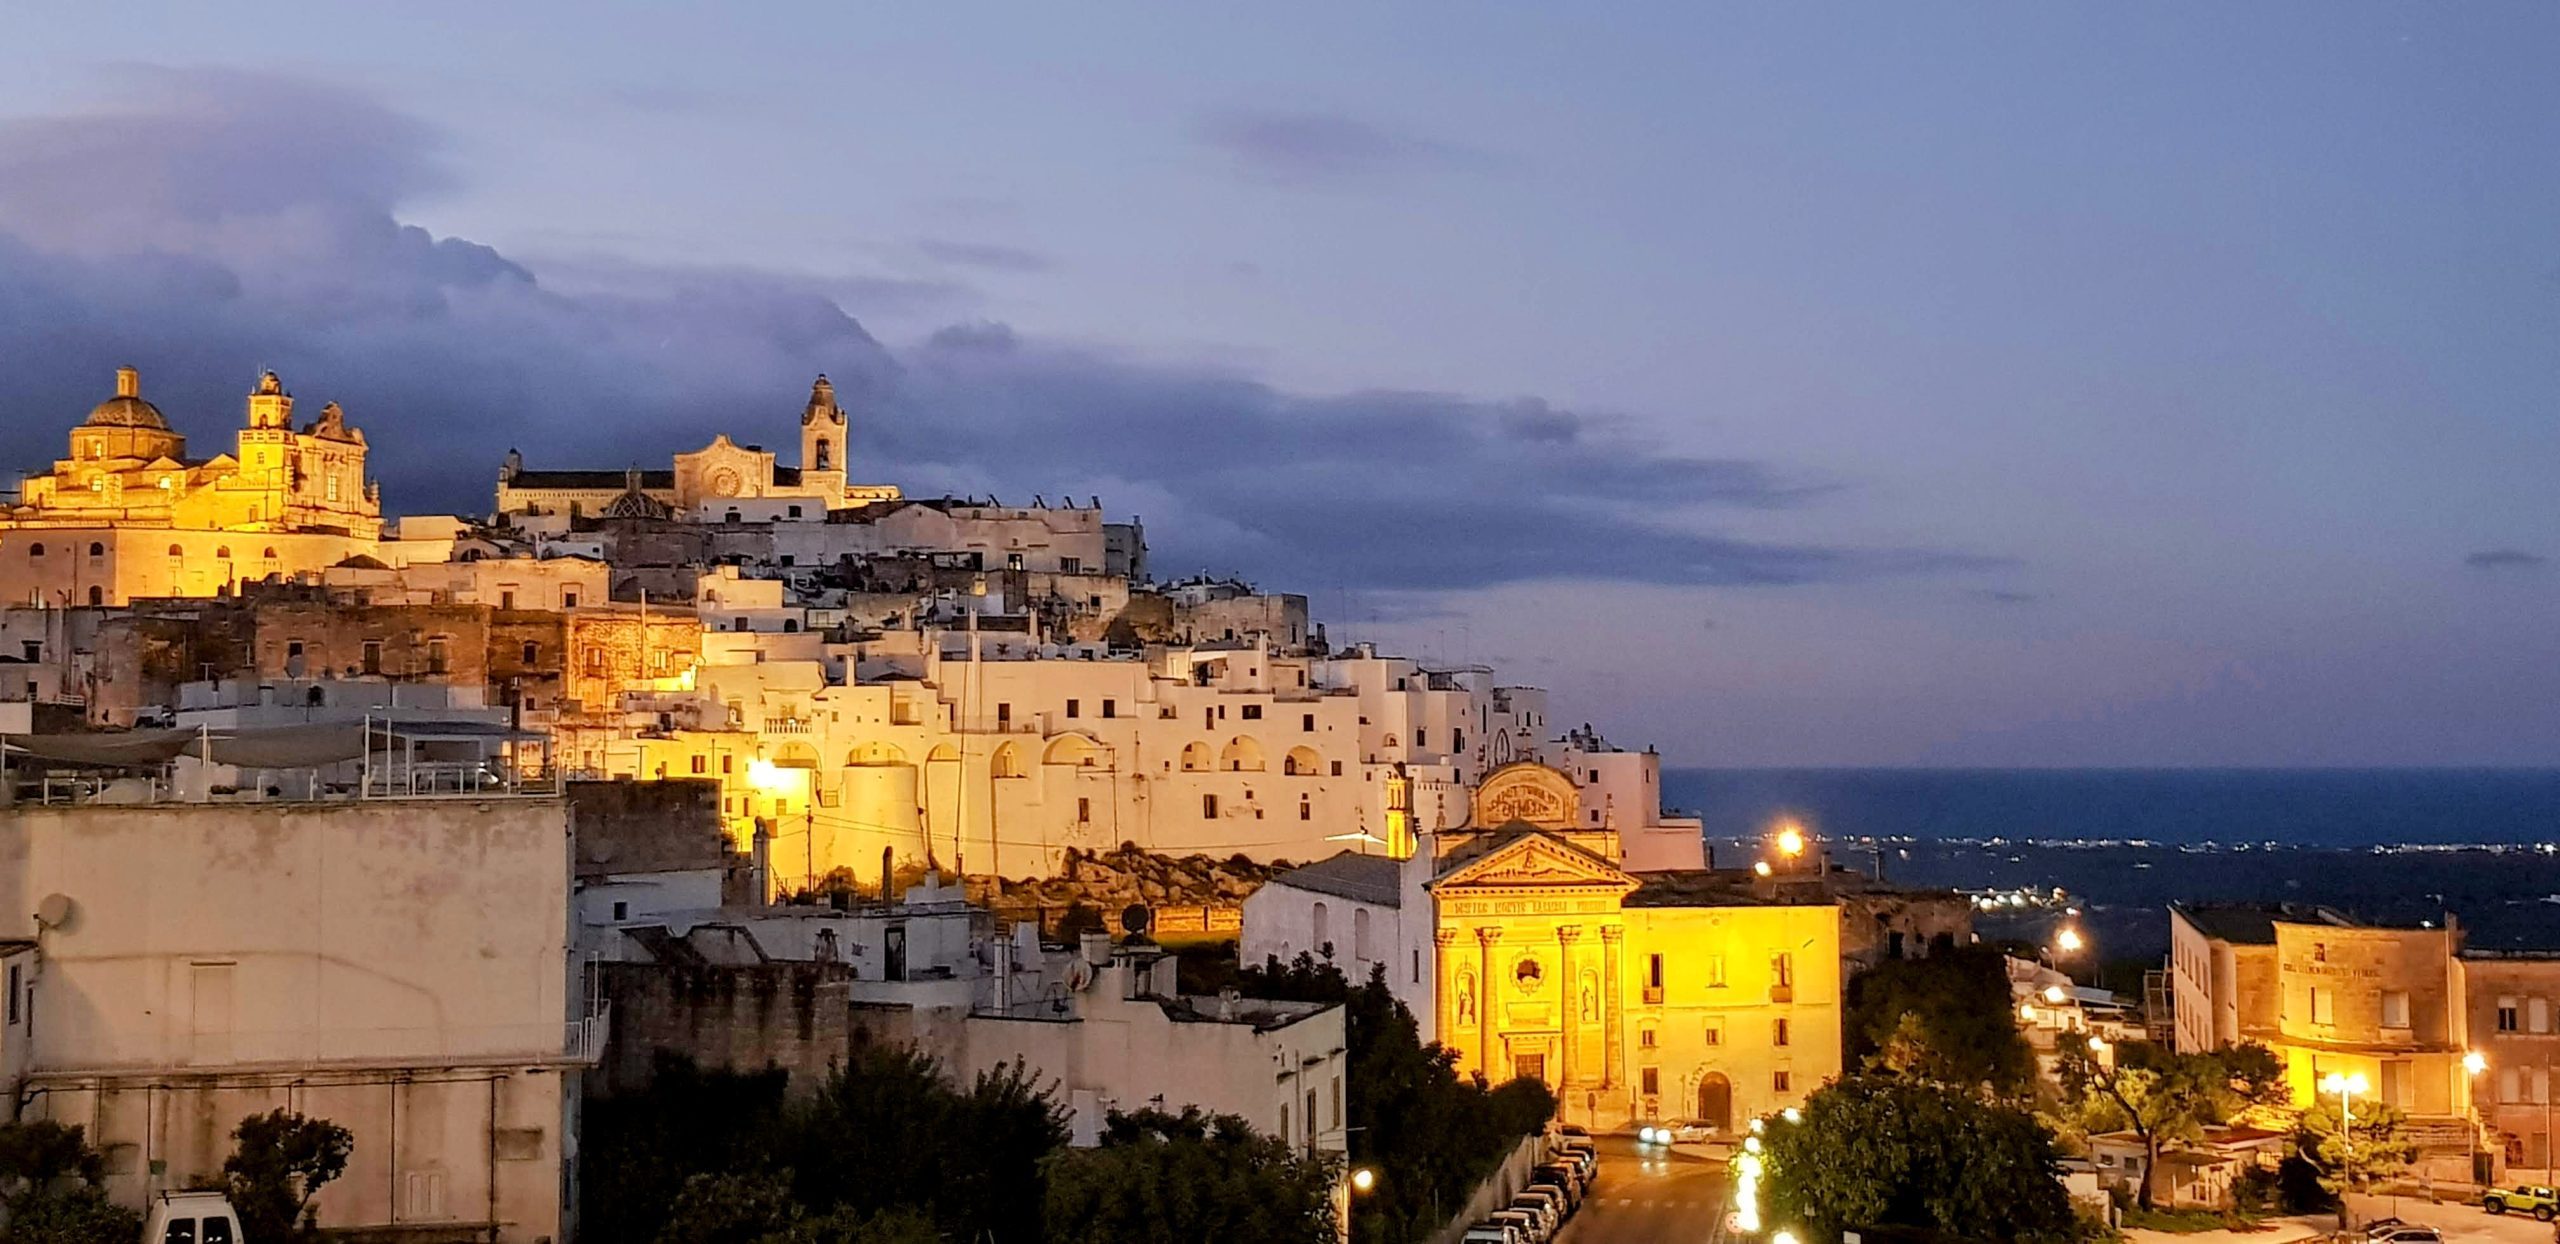 Ostuni: La ciudad blanca de la Apulia que te transportará hasta la mismísima Andalucía